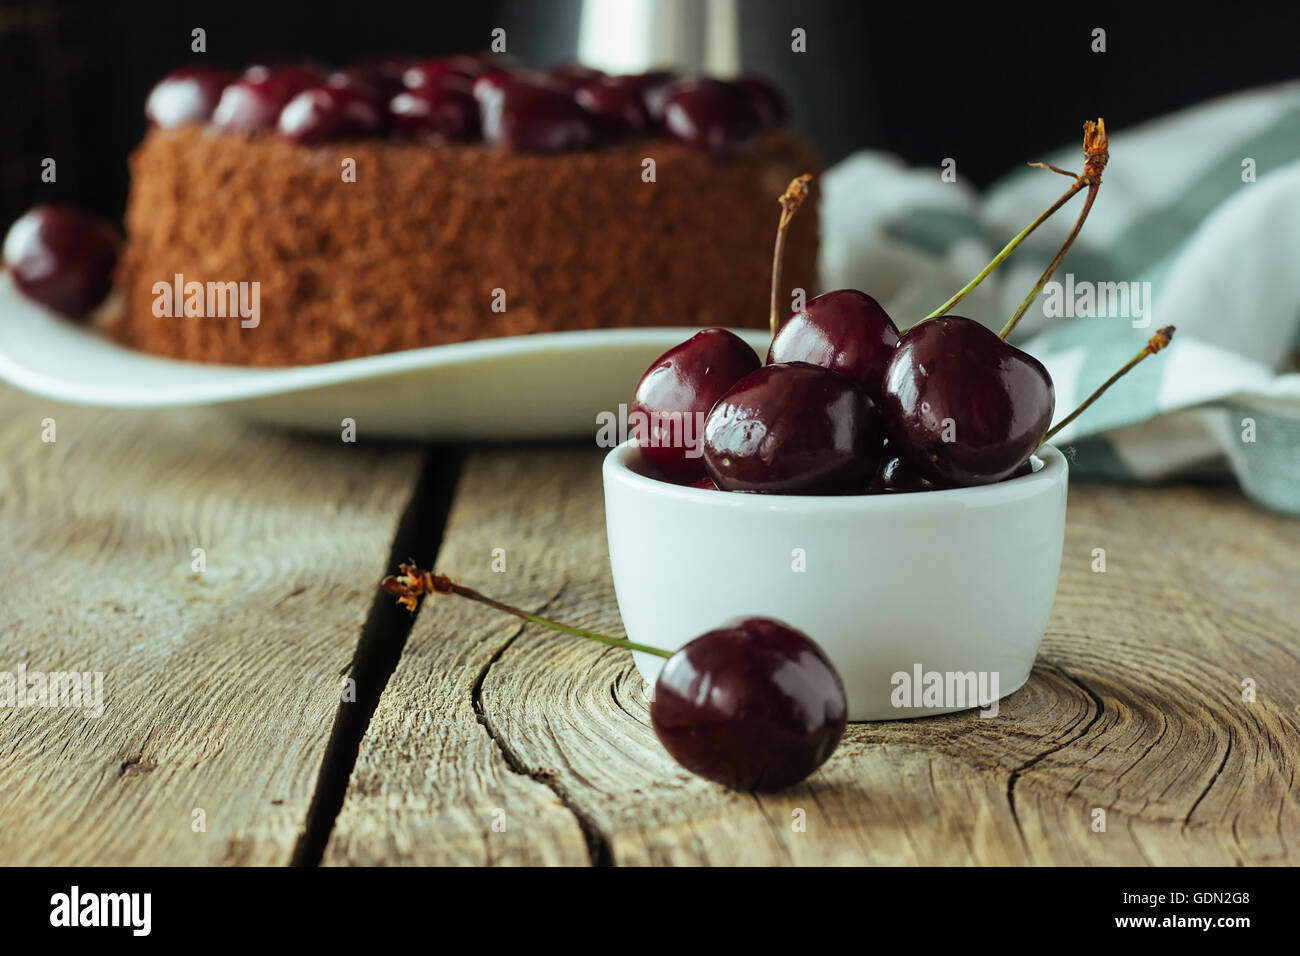 Gros plan de cerise noire et de gâteau au chocolat, selective focus Banque D'Images